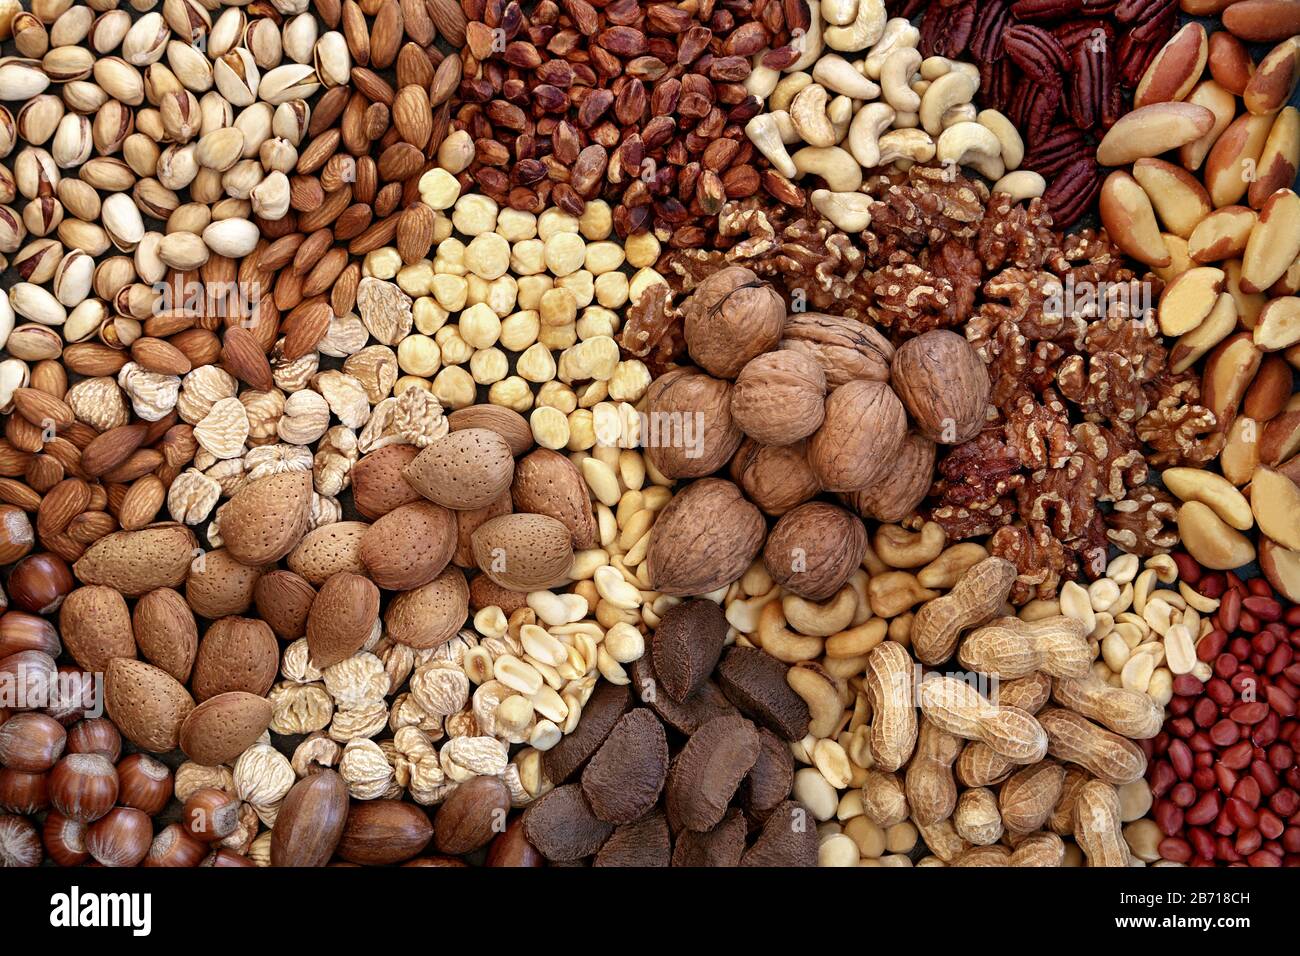 Collection de noix séchées formant un fond. Nourriture de santé élevée en protéines, oméga 3, antioxydants, minéraux et vitamines. Peut aider à réduire le cholestérol. Banque D'Images